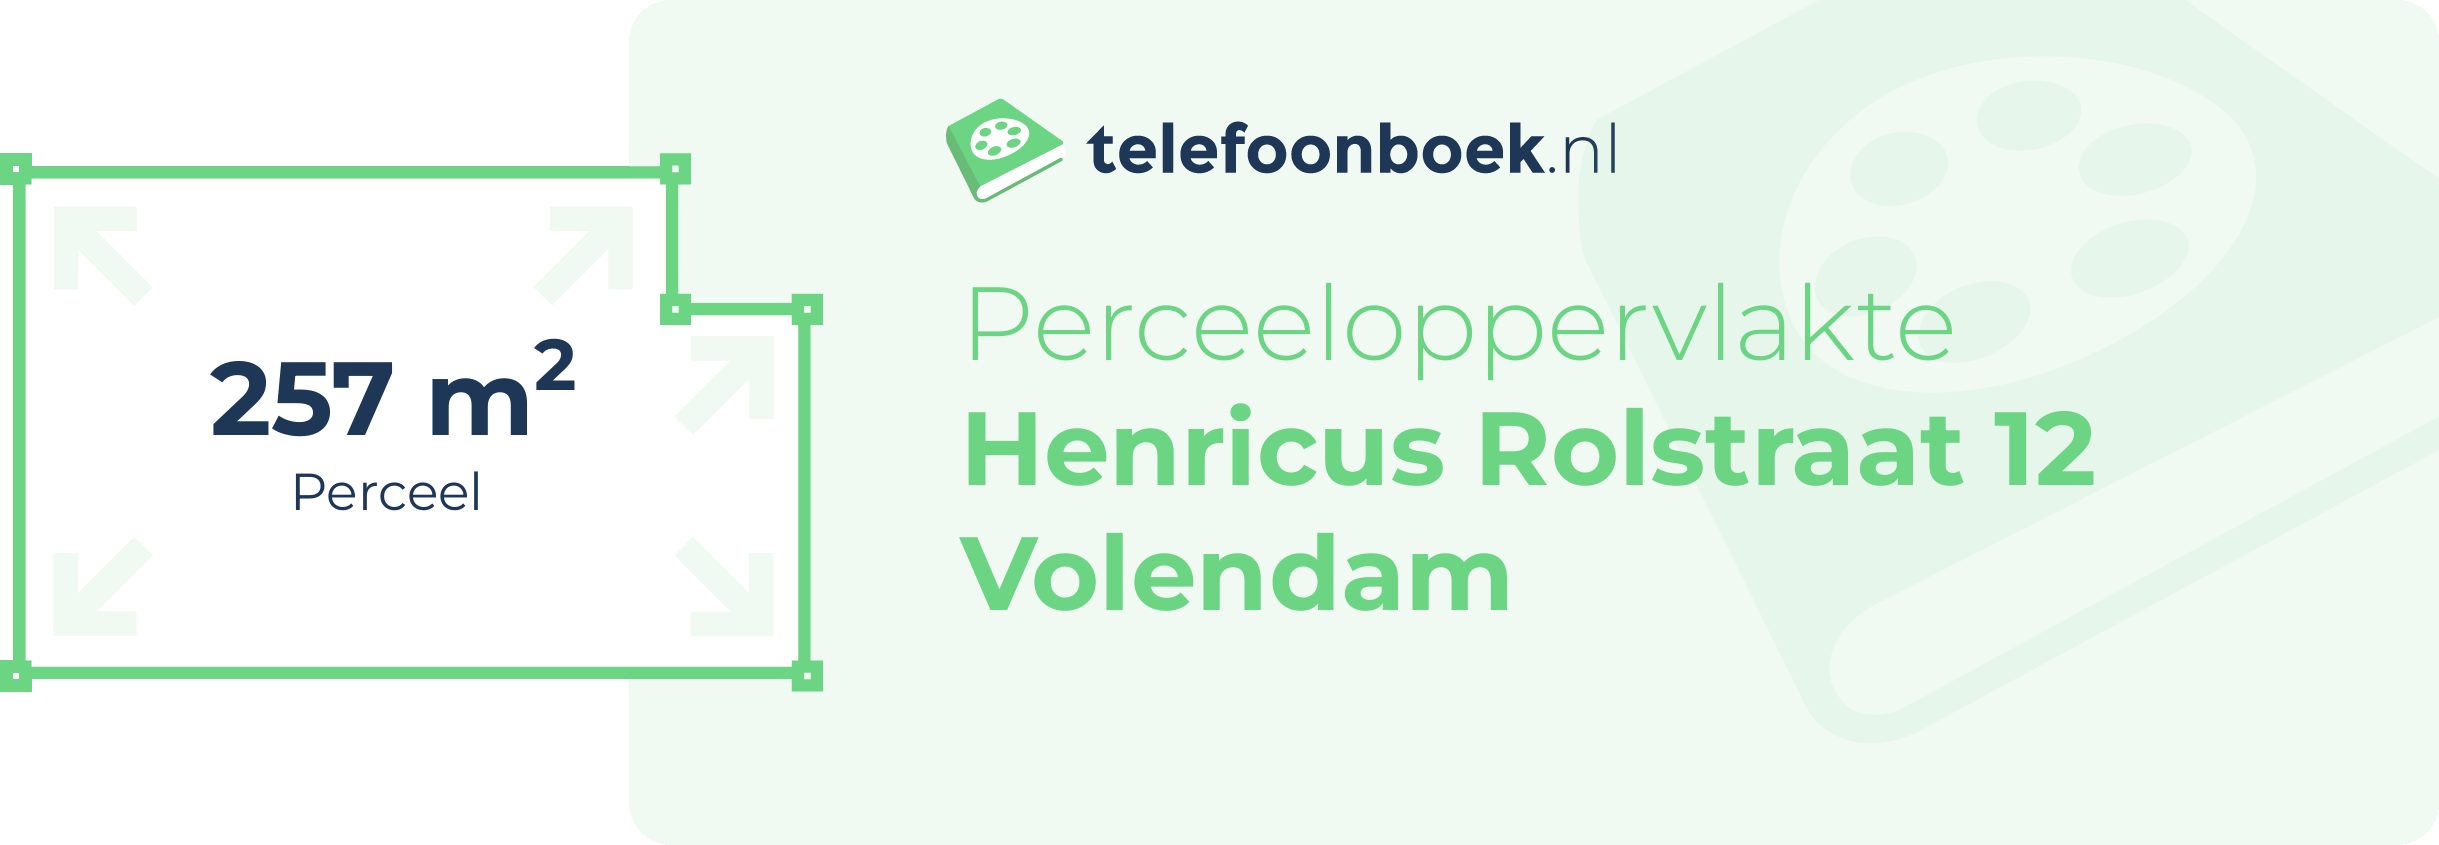 Perceeloppervlakte Henricus Rolstraat 12 Volendam